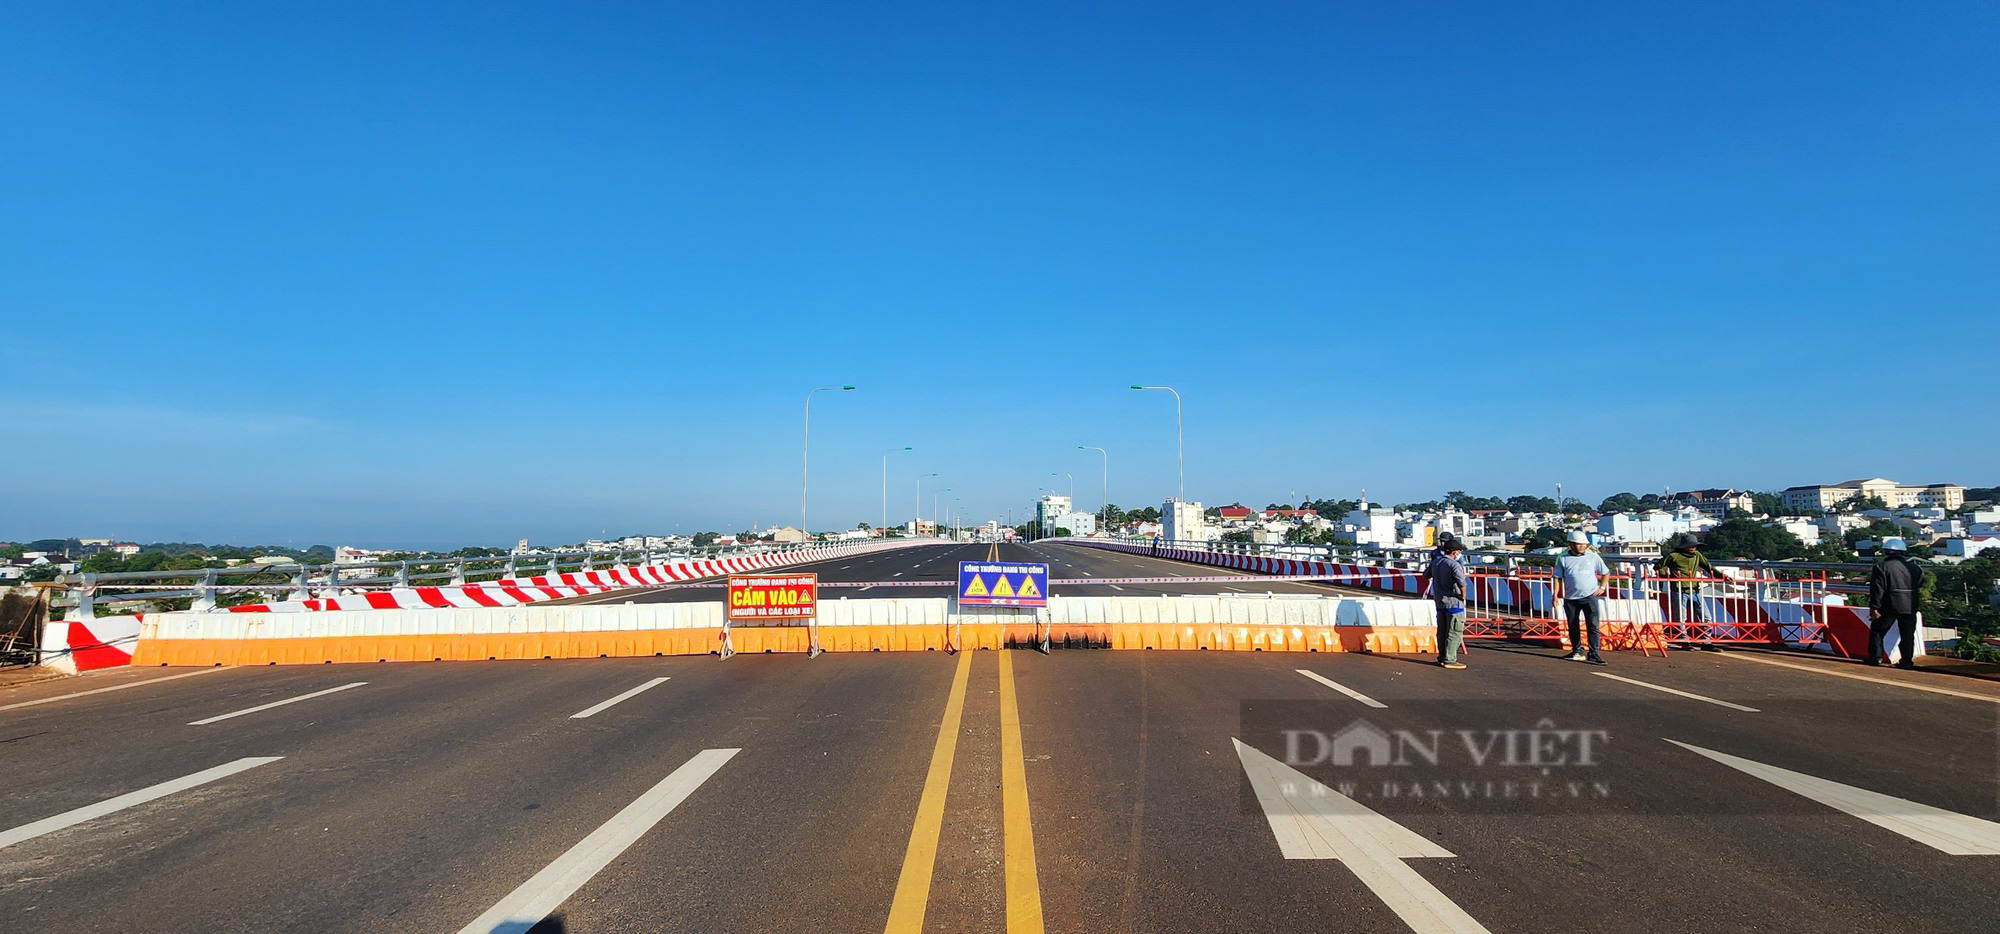 Rào chắn Đại lộ nghìn tỷ ở Đắk Lắk sau nhiều vụ tai nạn chết người - Ảnh 3.